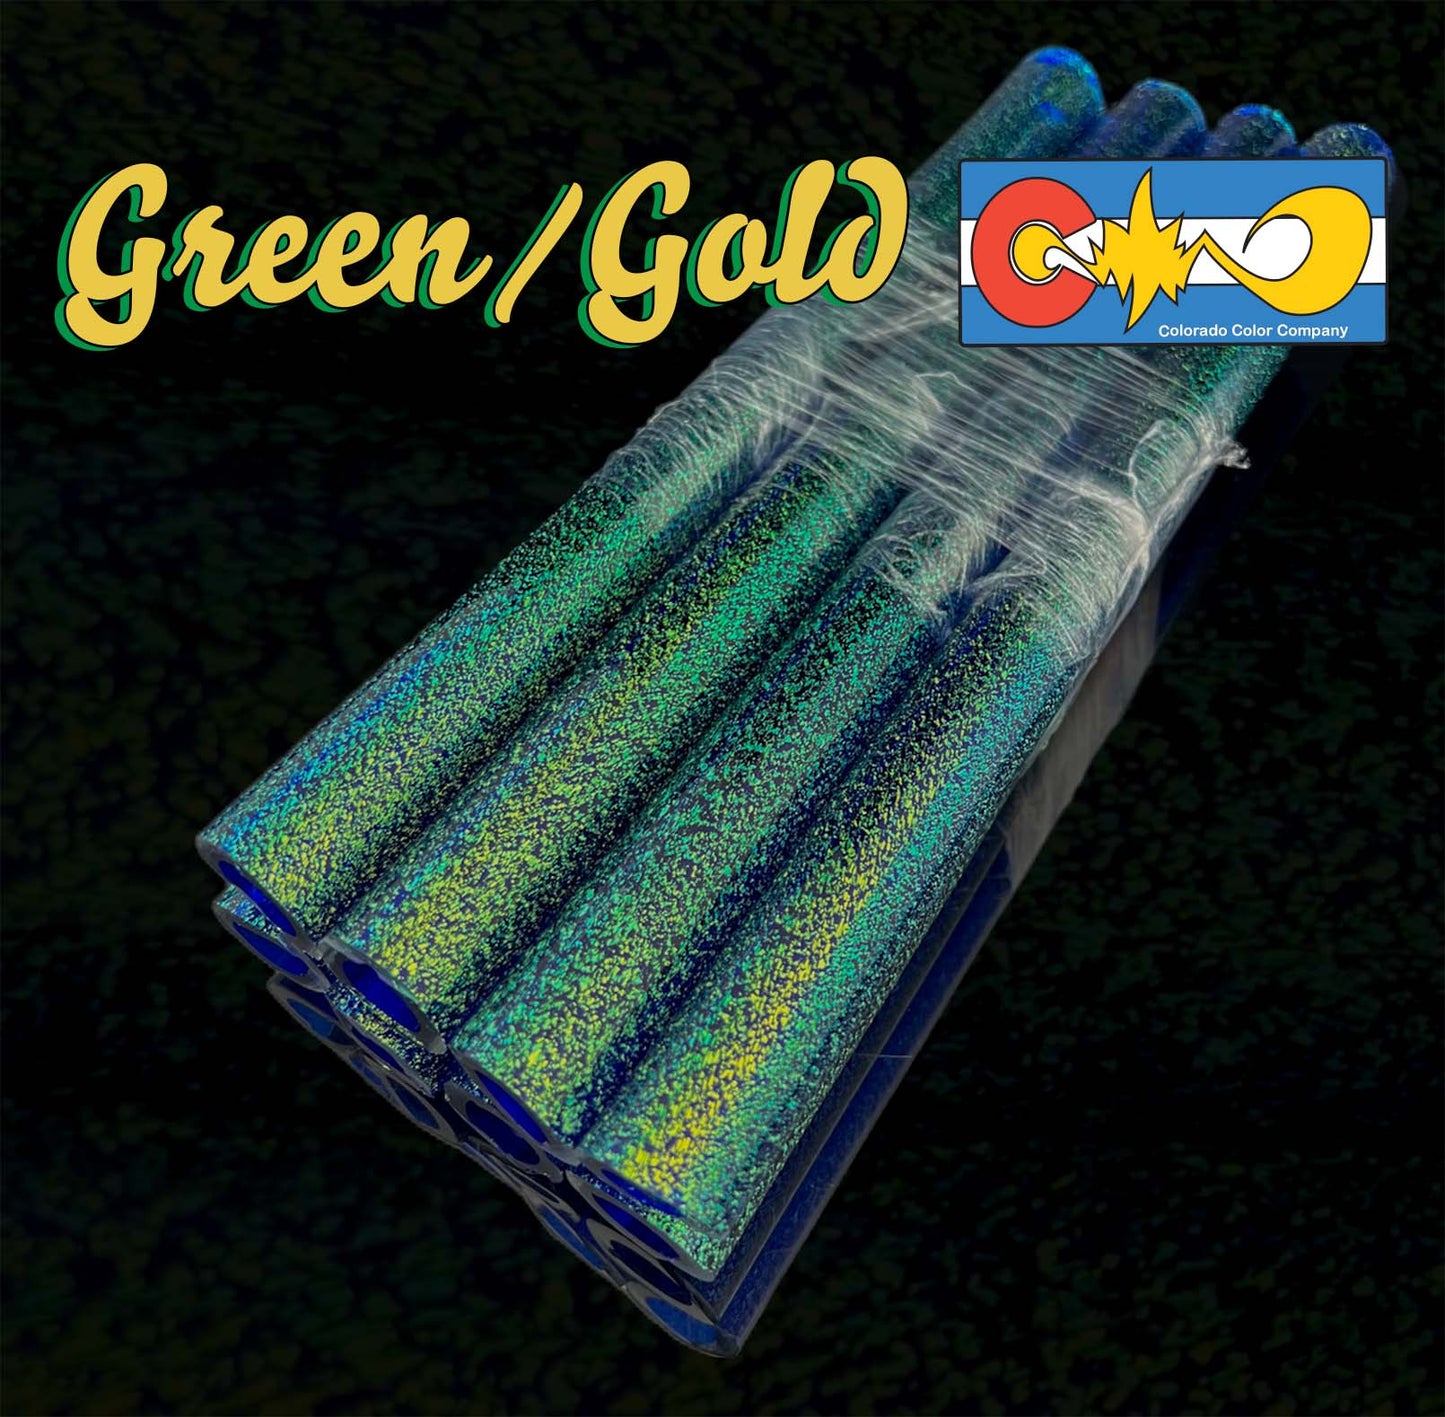 Dicroico verde/dorado - Capa central de cobalto - Vidrio de borosilicato